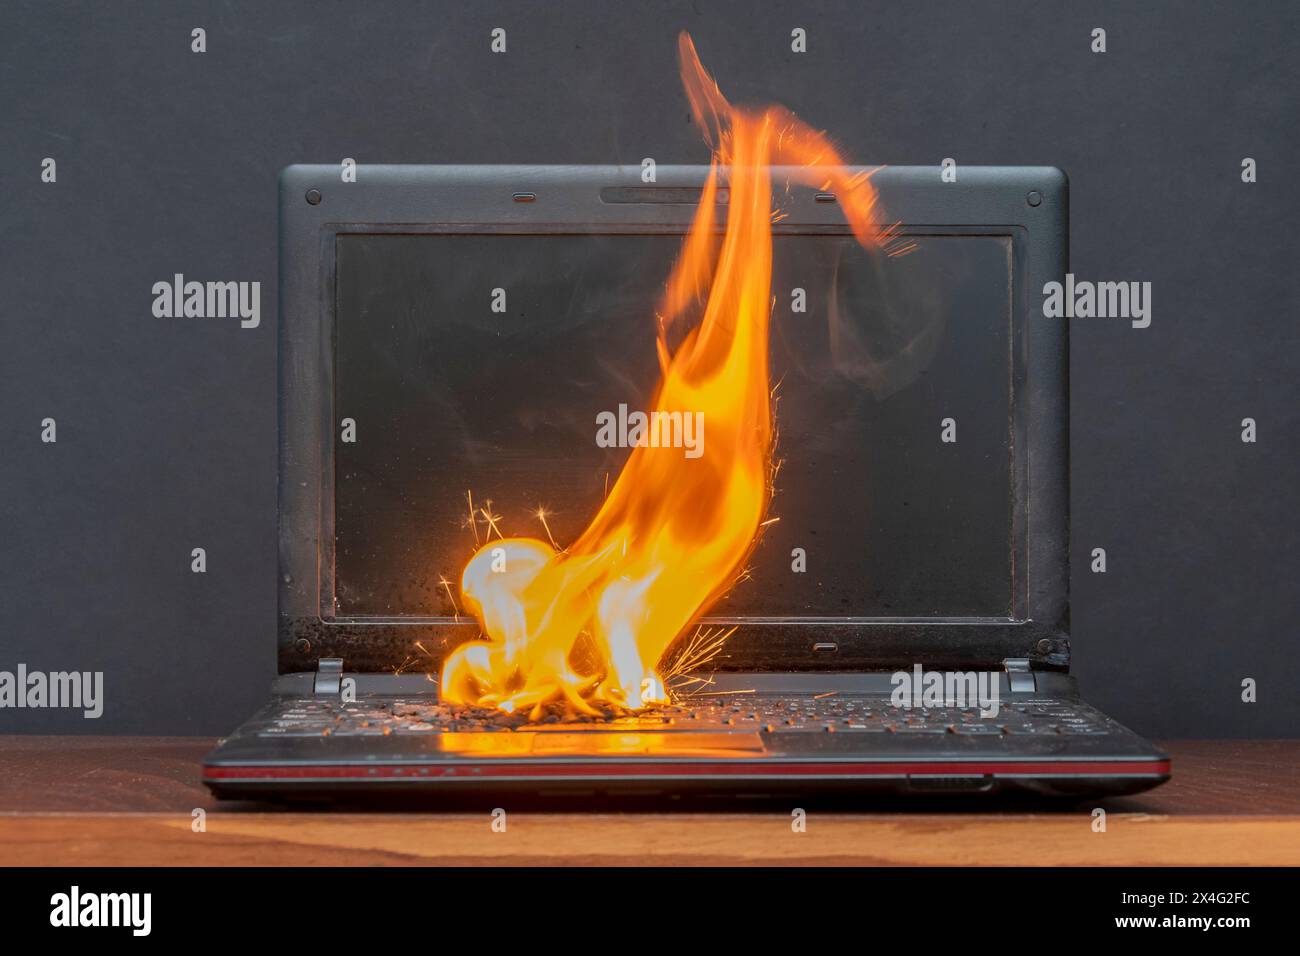 Nella stanza sul tavolo il computer portatile ha preso fuoco, l'accensione della batteria e dei contatti, un cortocircuito. Sistema antincendio. Foto Stock